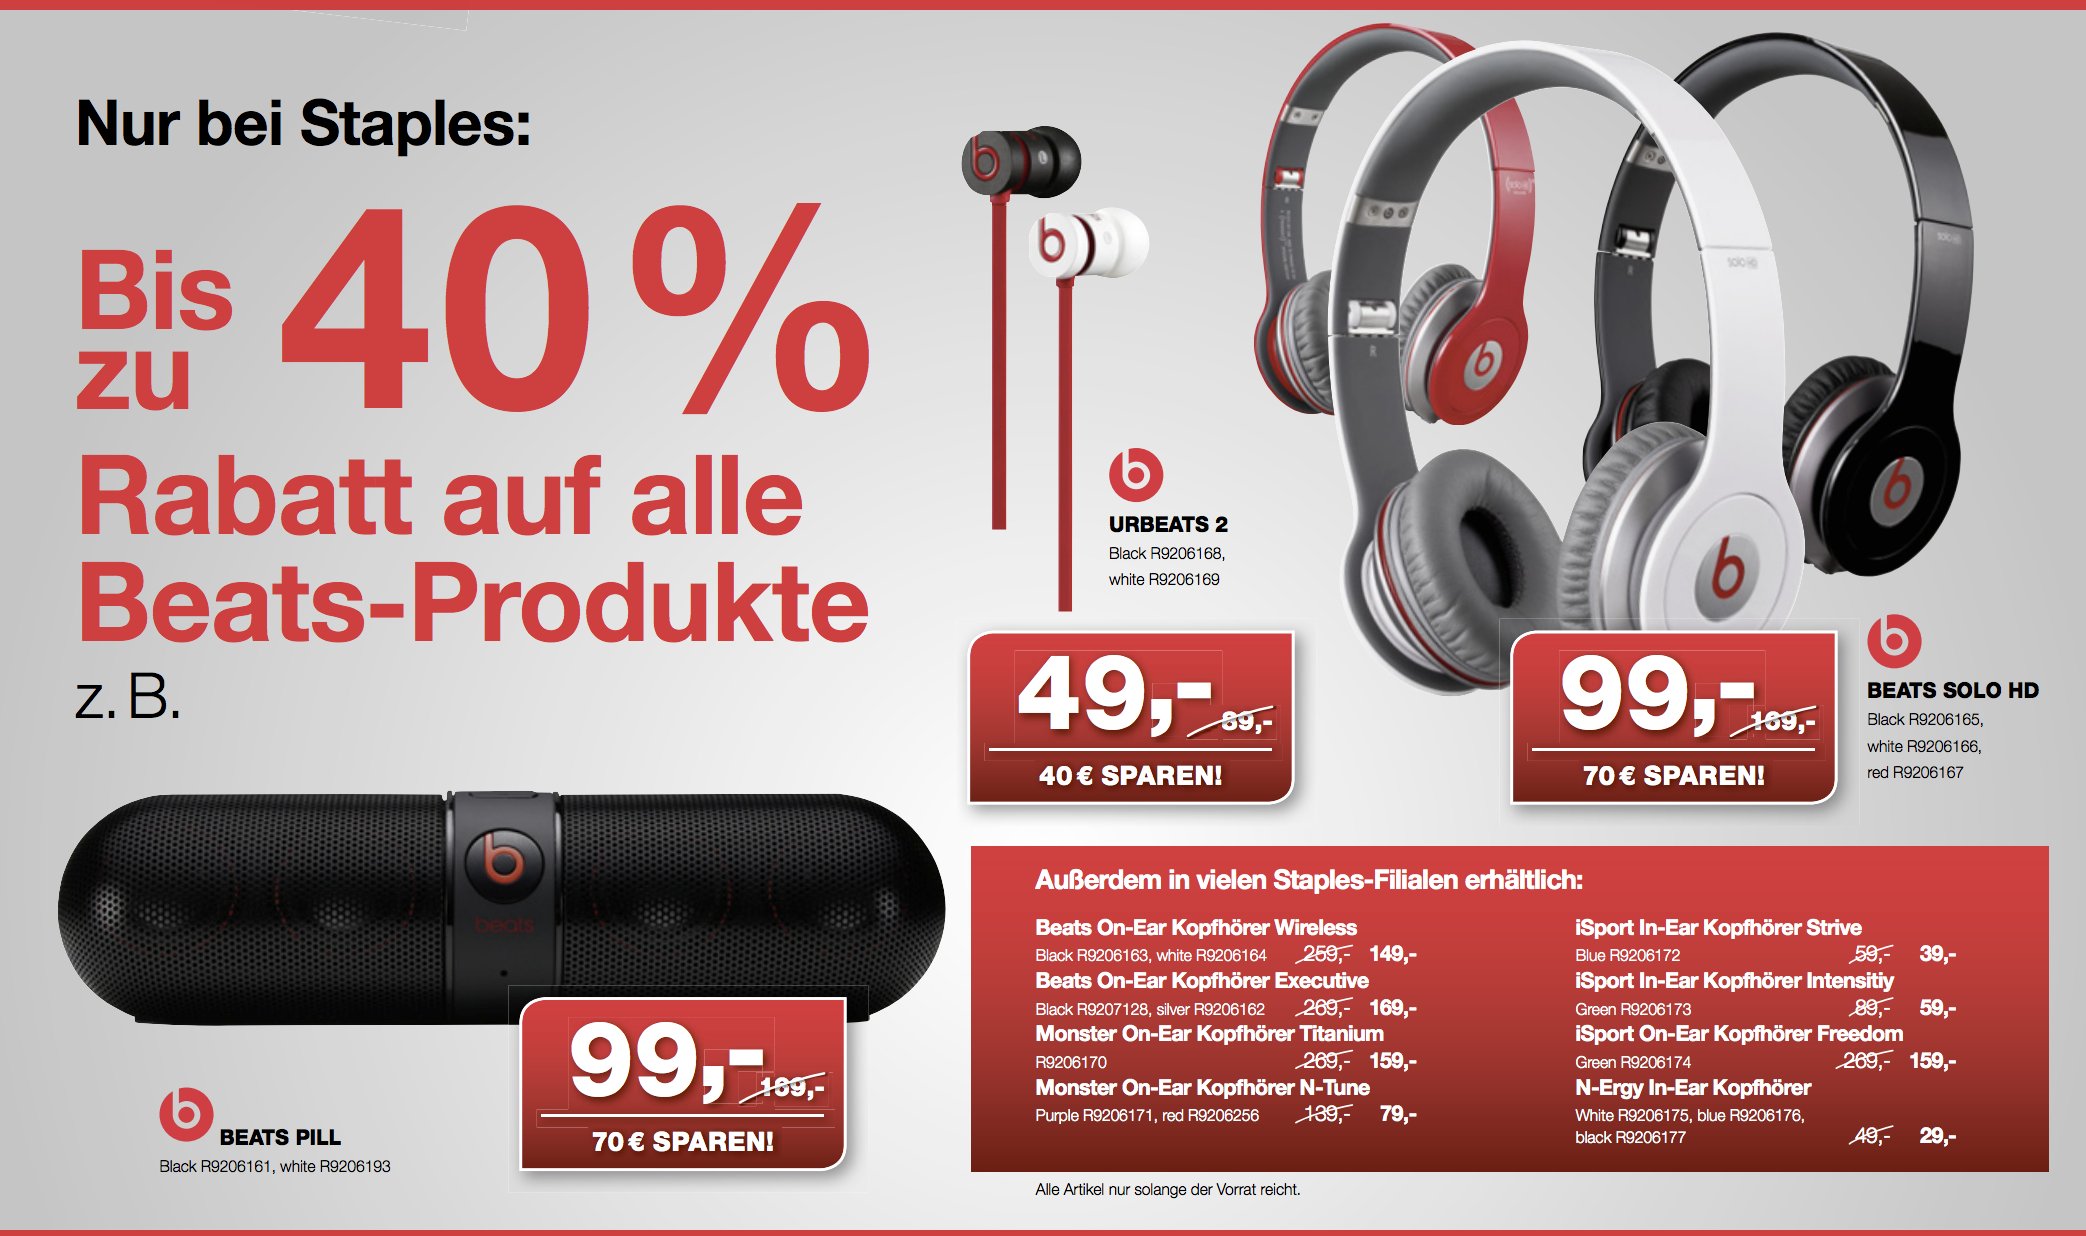 Beats bei Amazon ausverkauft - Staples mit 40 Prozent Rabatt auf alle Beats Produkte. 7